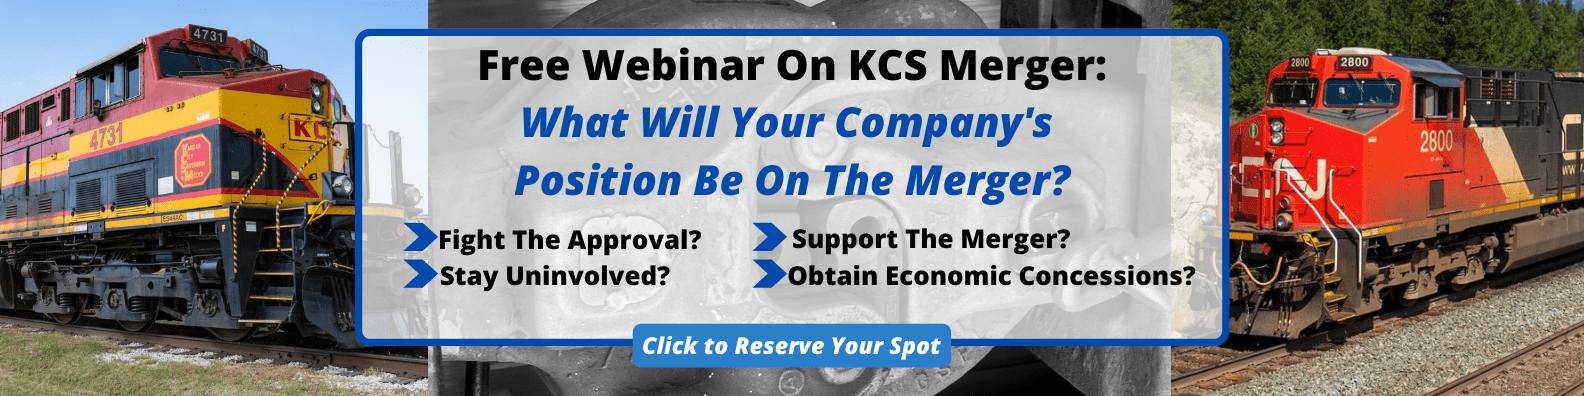 KCS Merger Webinar Registration